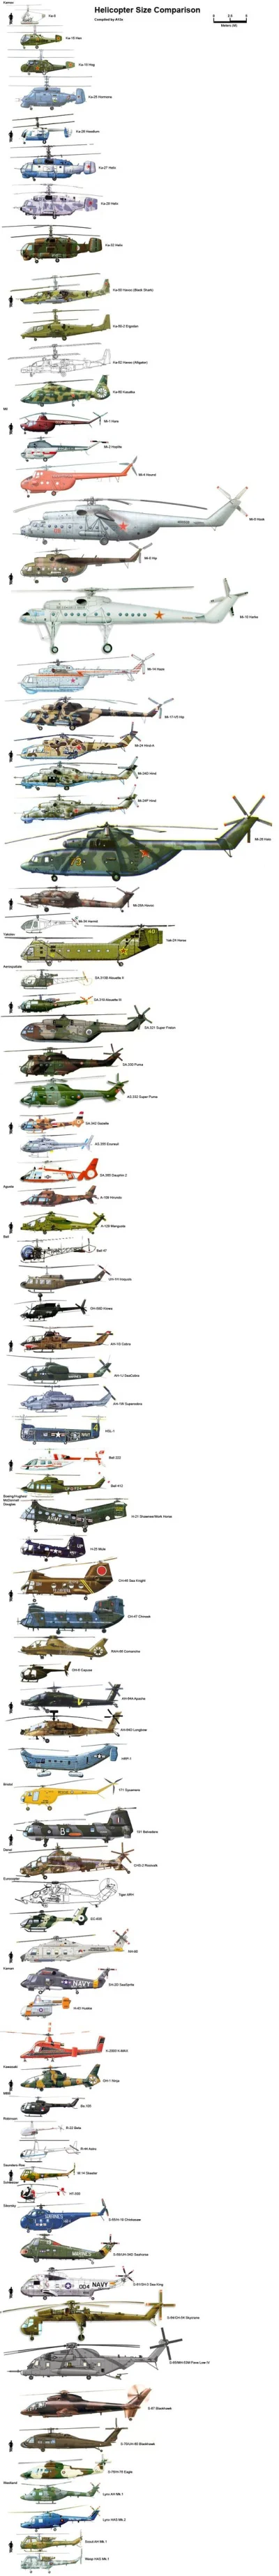 kono123 - Porównanie wielkości helikopterów

#ciekawostki #helikopter #porownania